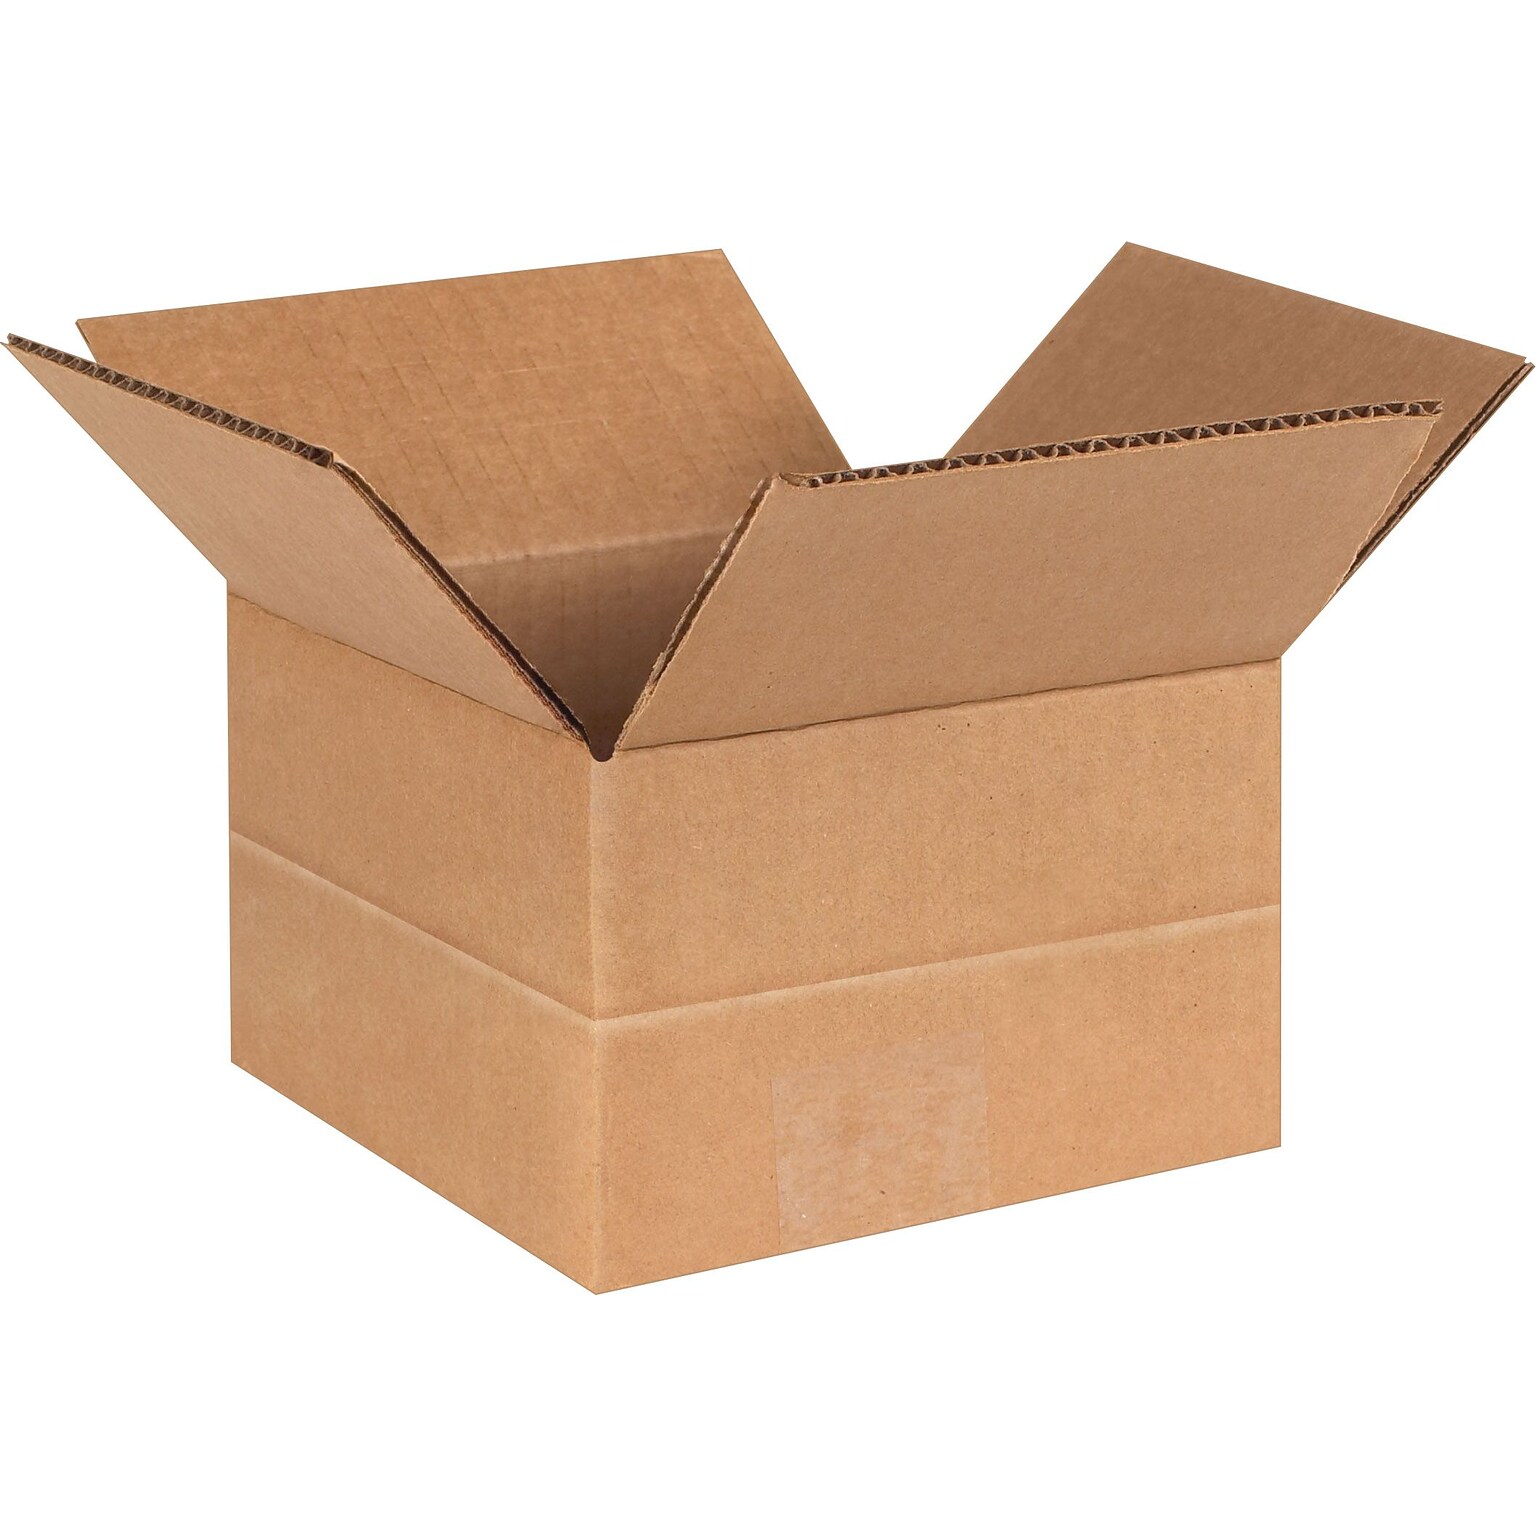 6 x 6 x 4 Multi-Depth Shipping Boxes, Brown, 25/Bundle (MD664)